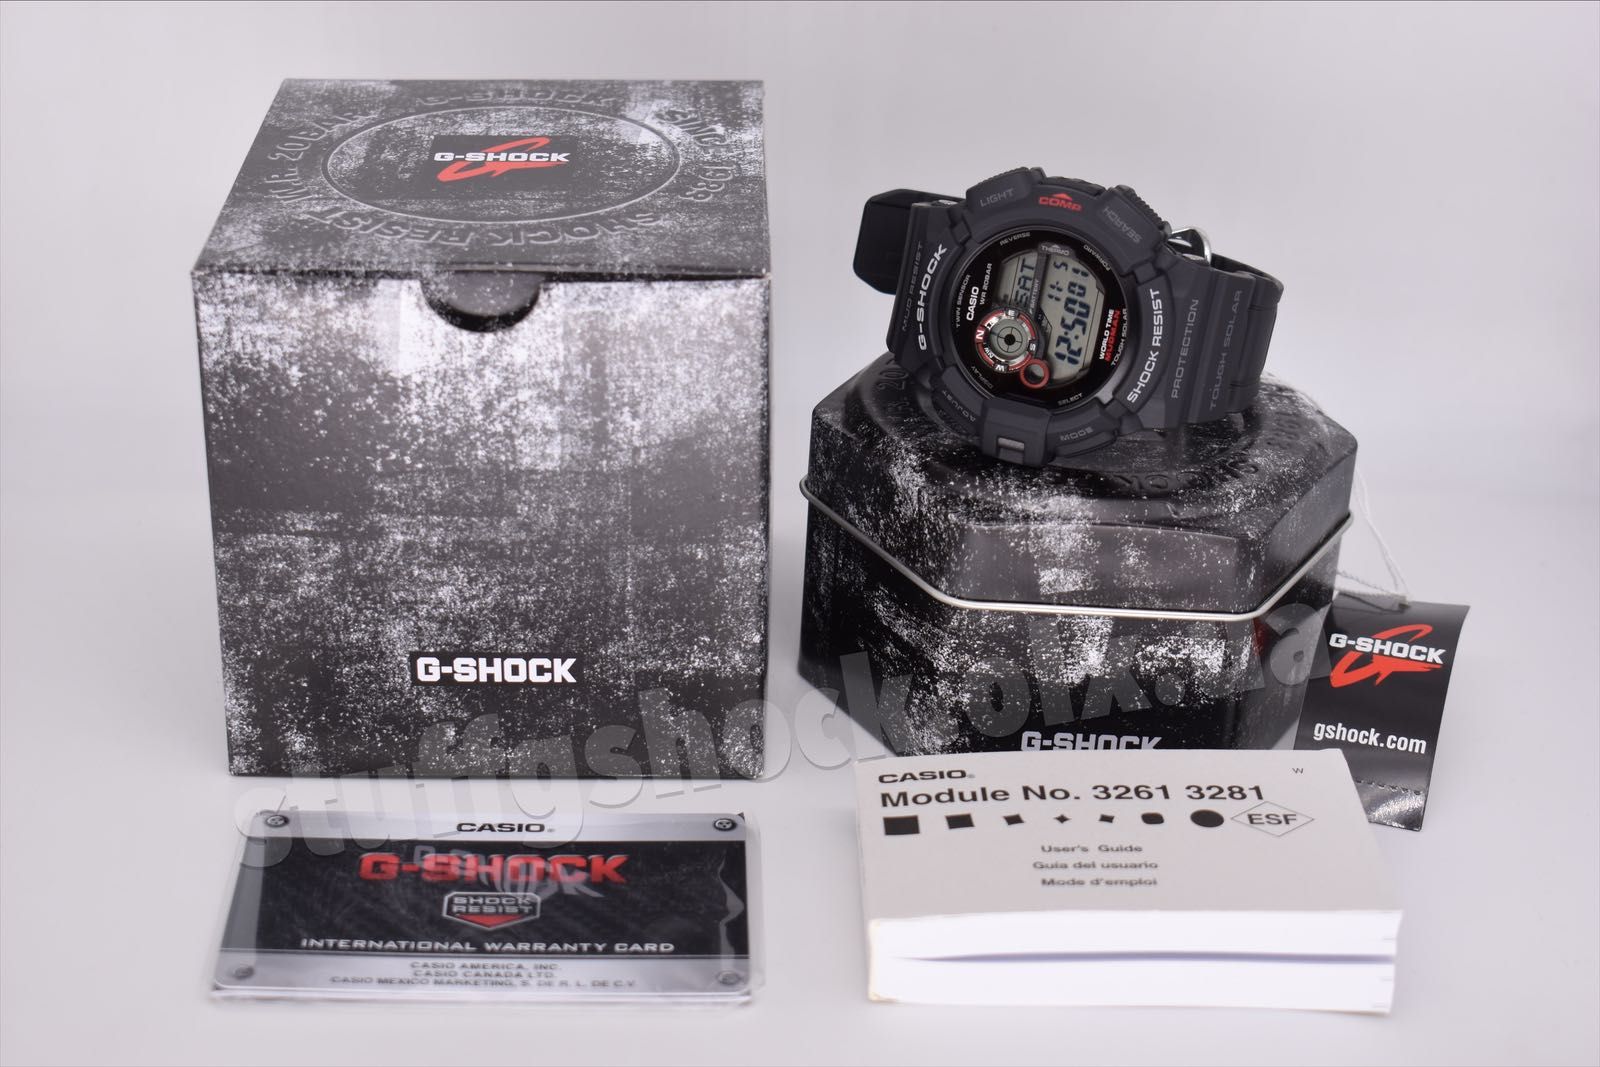 Casio G-Shock G-9300-1E NEW ORIGINAL!!! Mudman!